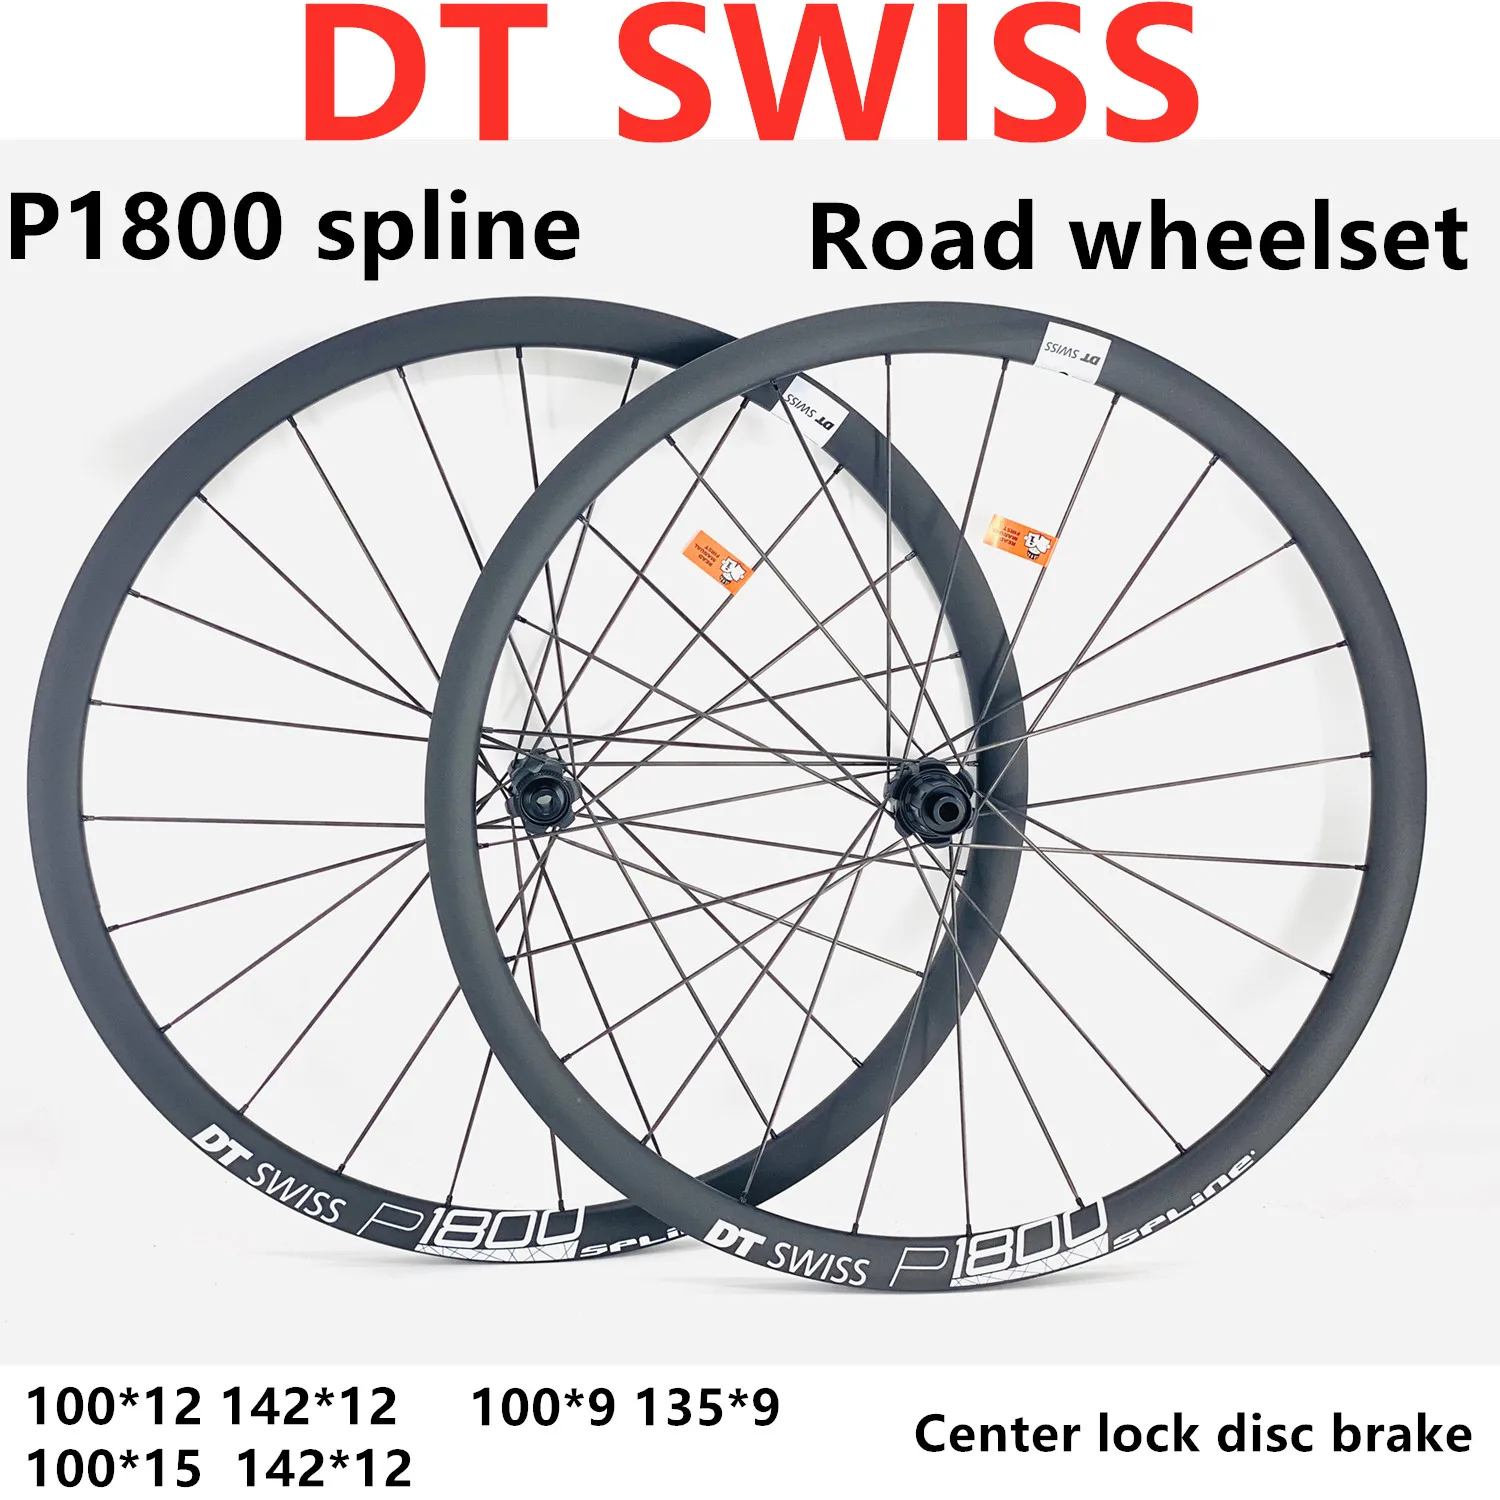 DT SWISS P1800 스플라인 23 142x12 100x12 11s, 로드 디스크 브레이크 휠 세트, 700c dt, 스위스 중앙  잠금 장치, p1800 스플라인 - AliExpress Sports  Entertainment